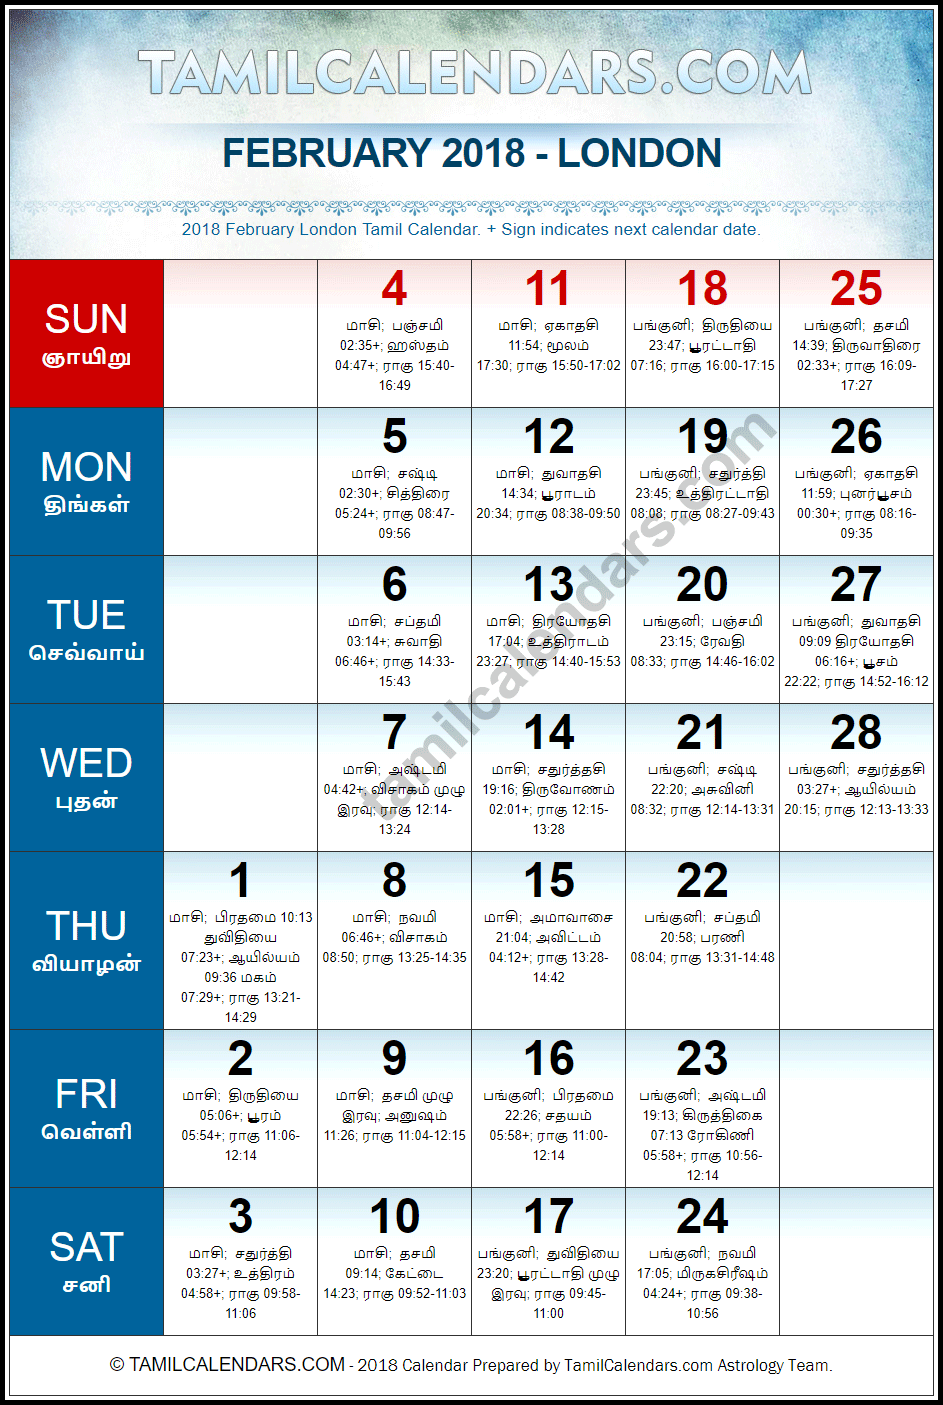 February 2018 Tamil Calendar for London, UK